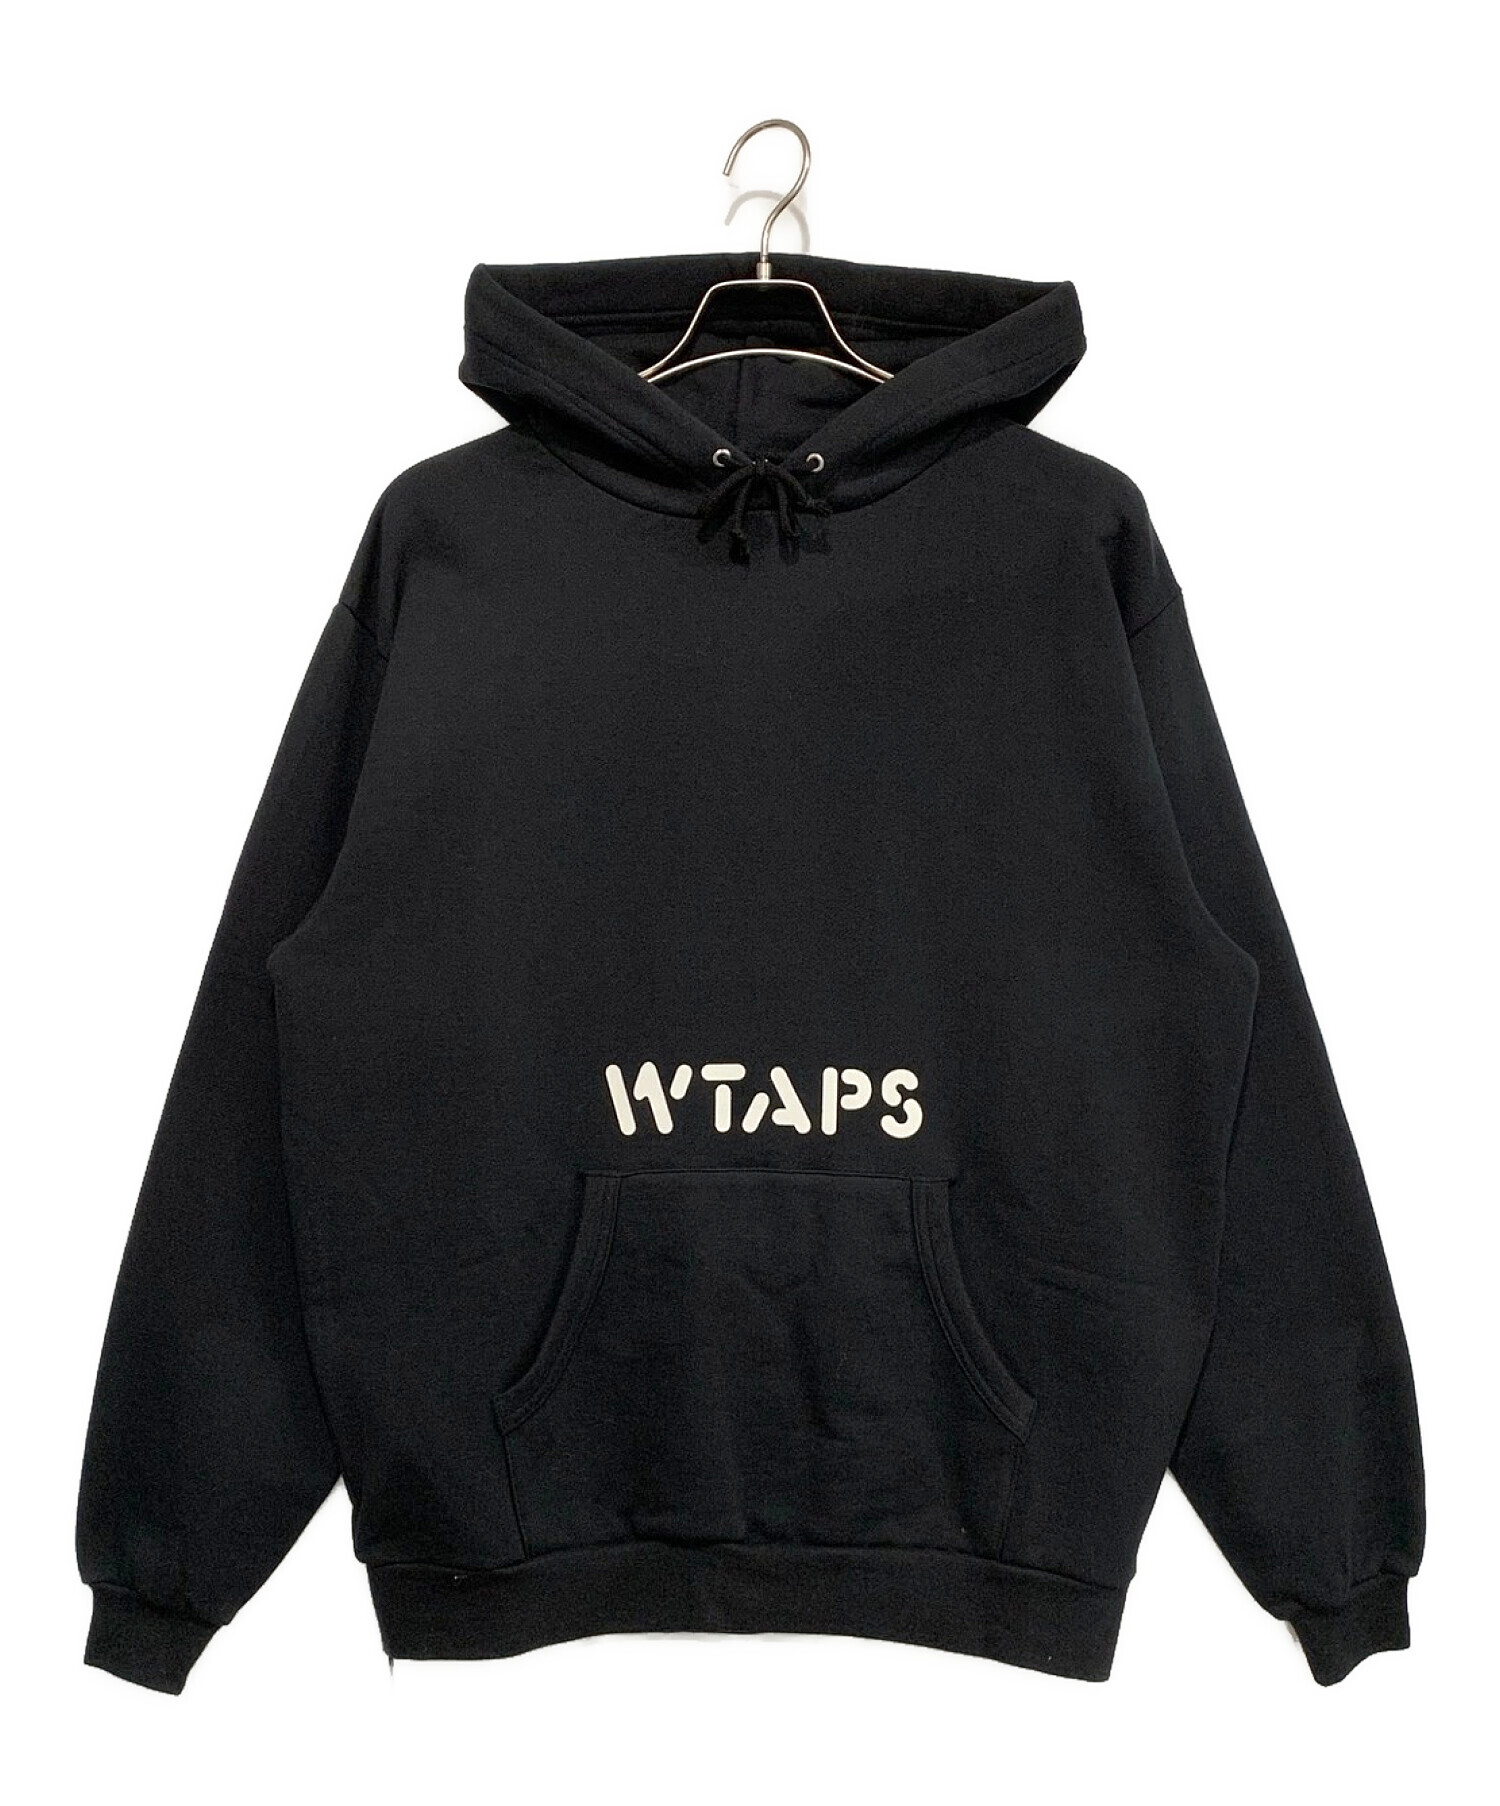 wtaps hoodie www.krzysztofbialy.com